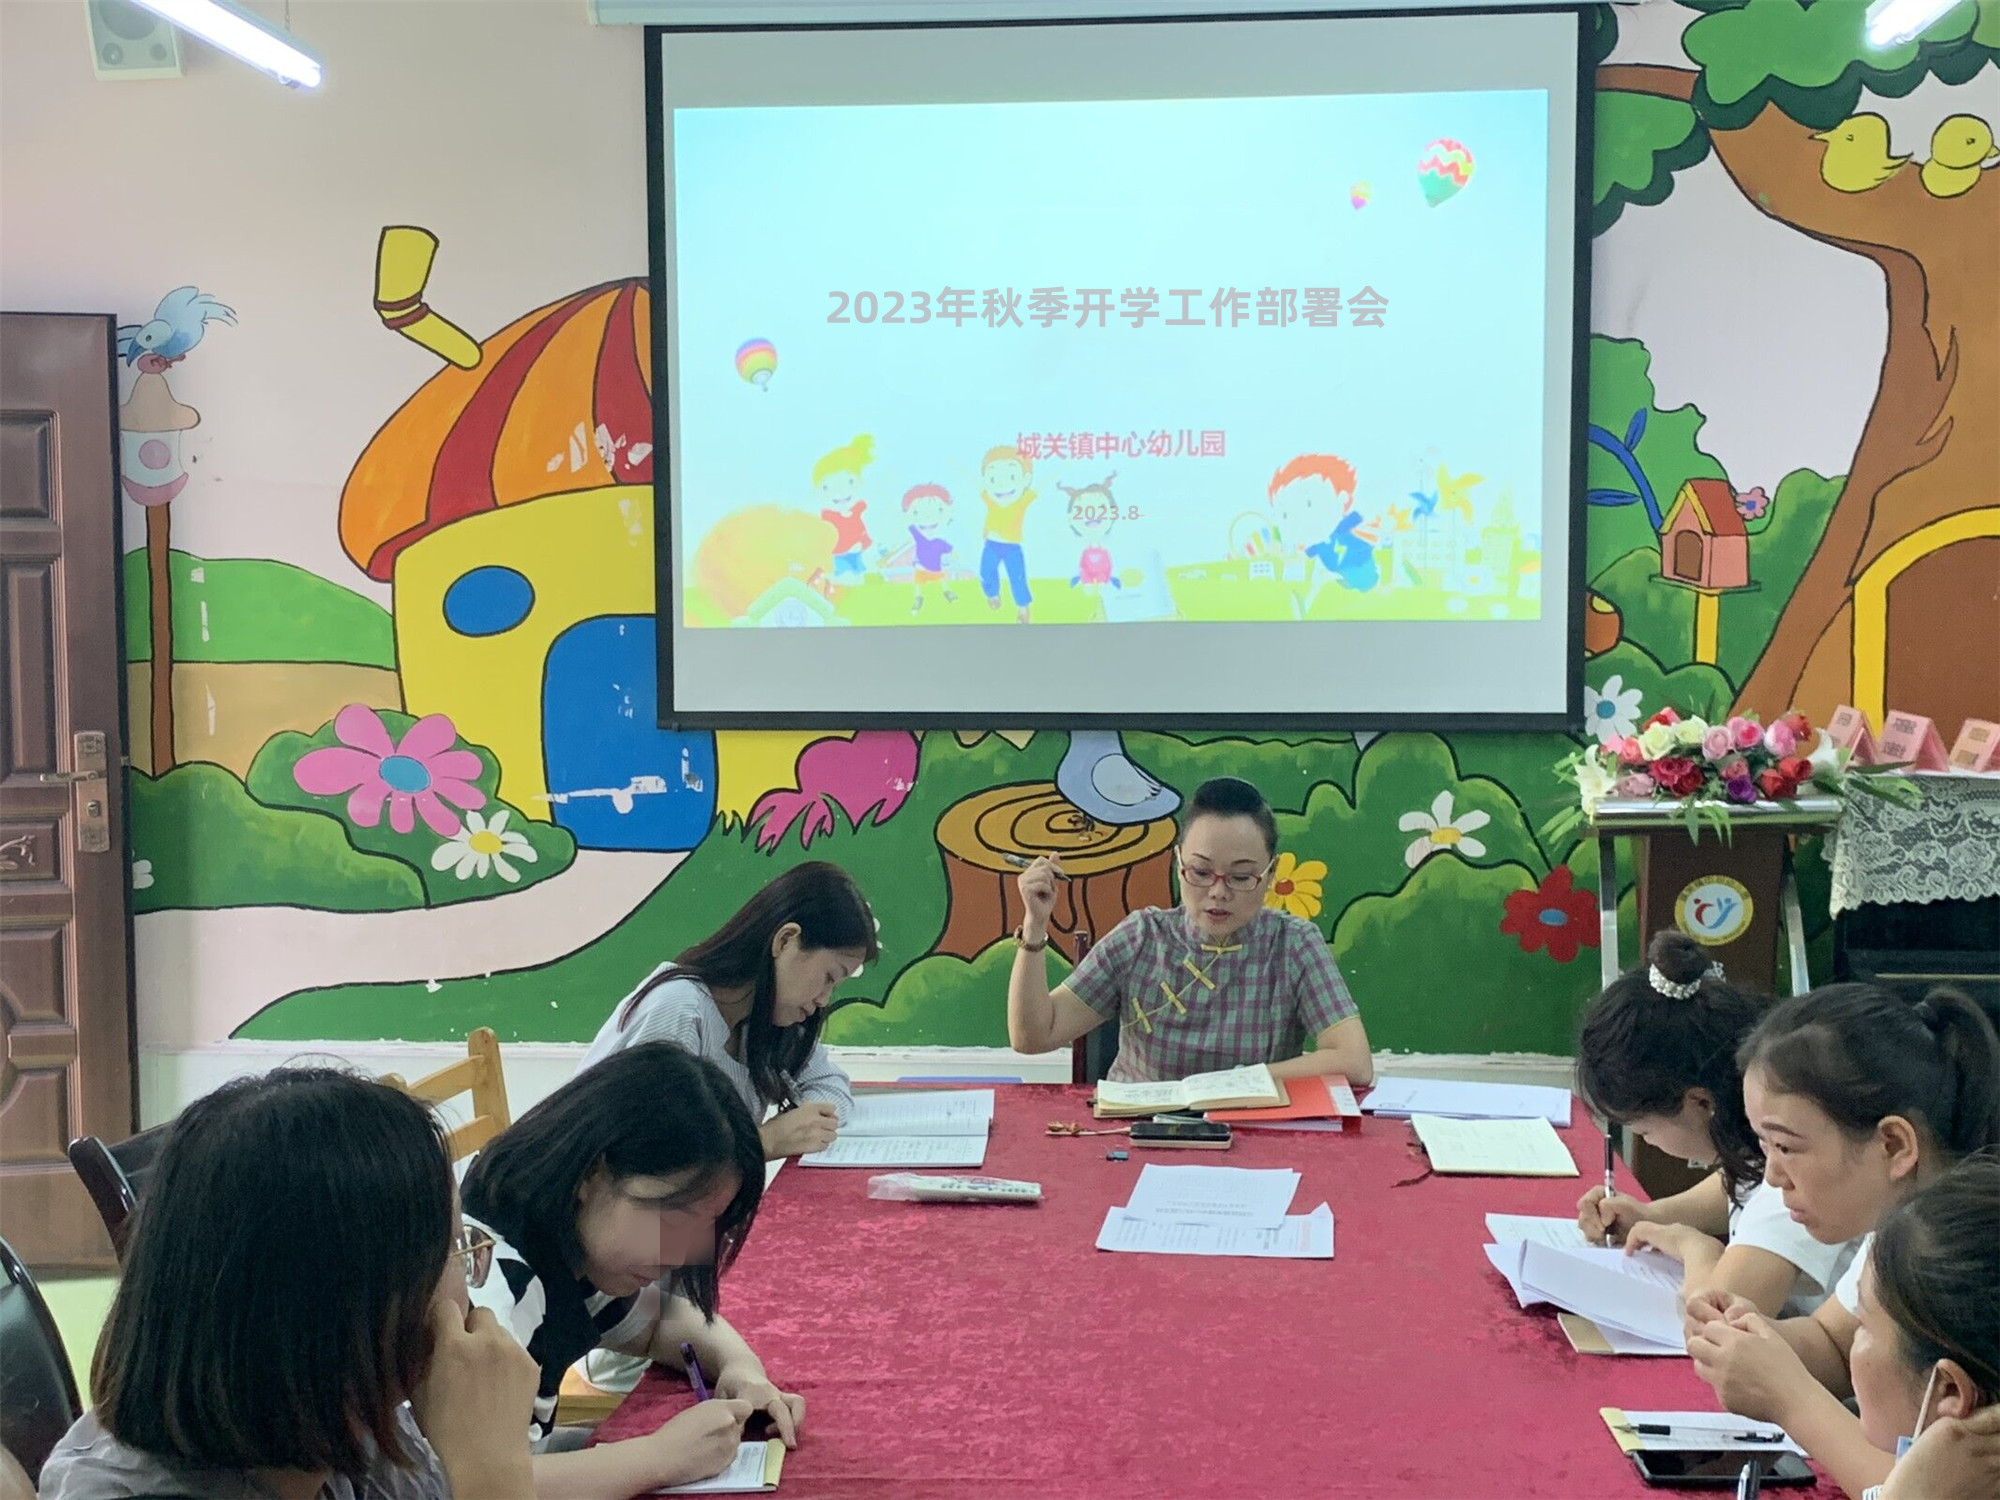 全力以赴迎开学  精心准备开新篇 ——汉阴县城关镇中心幼儿园2023年秋季开学准备工作纪实